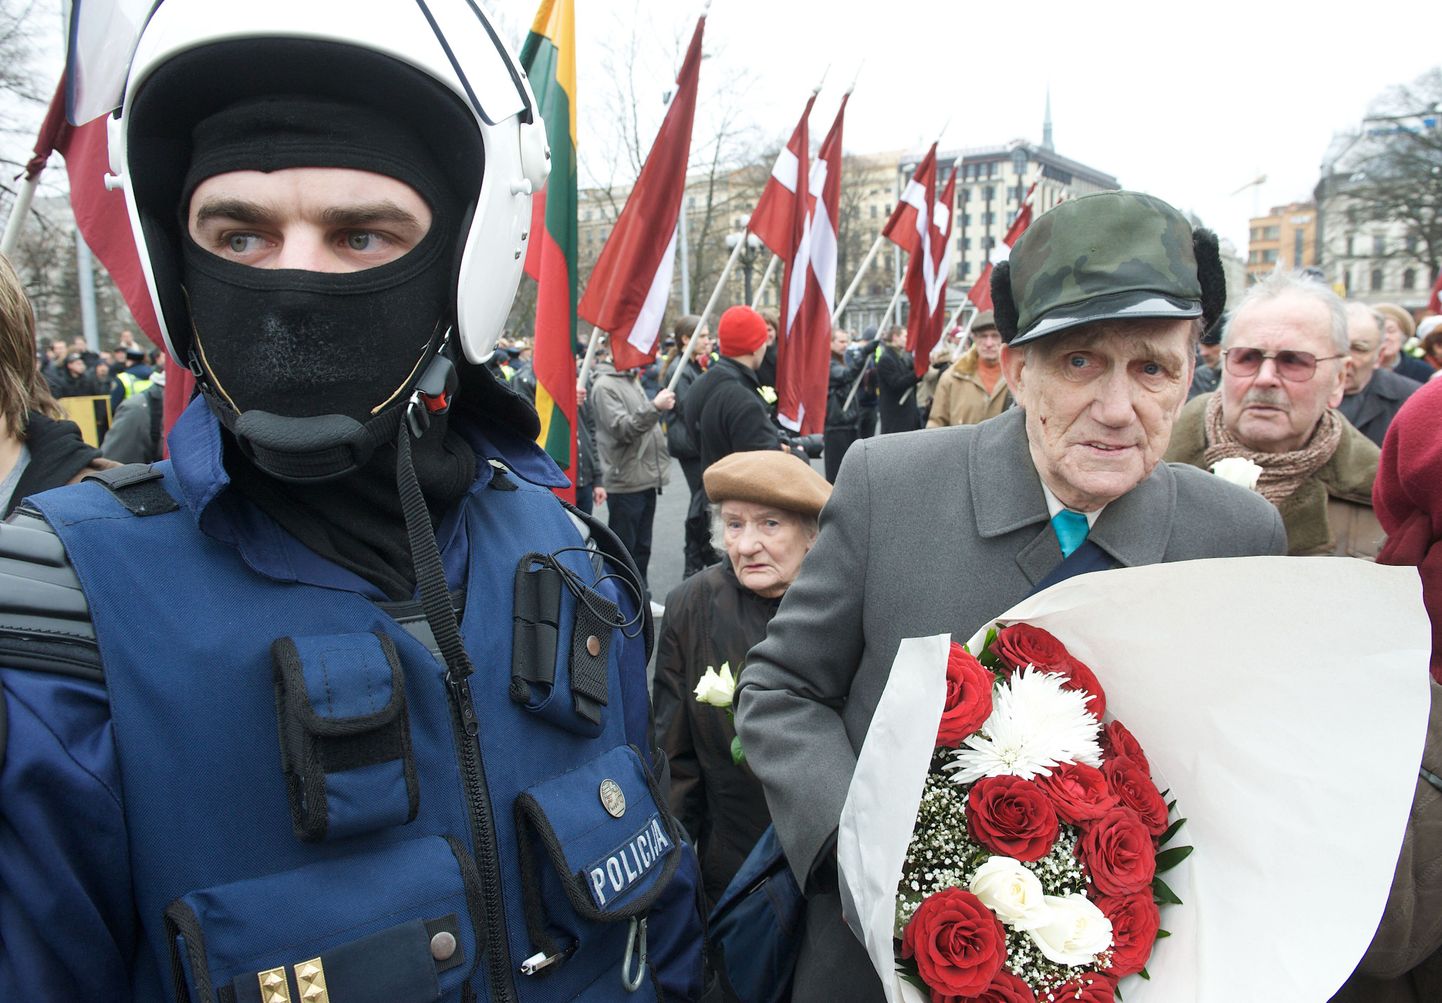 Ветеран, служивший в мундире нацистской Германии, возлагает цветы к подножию памятника.